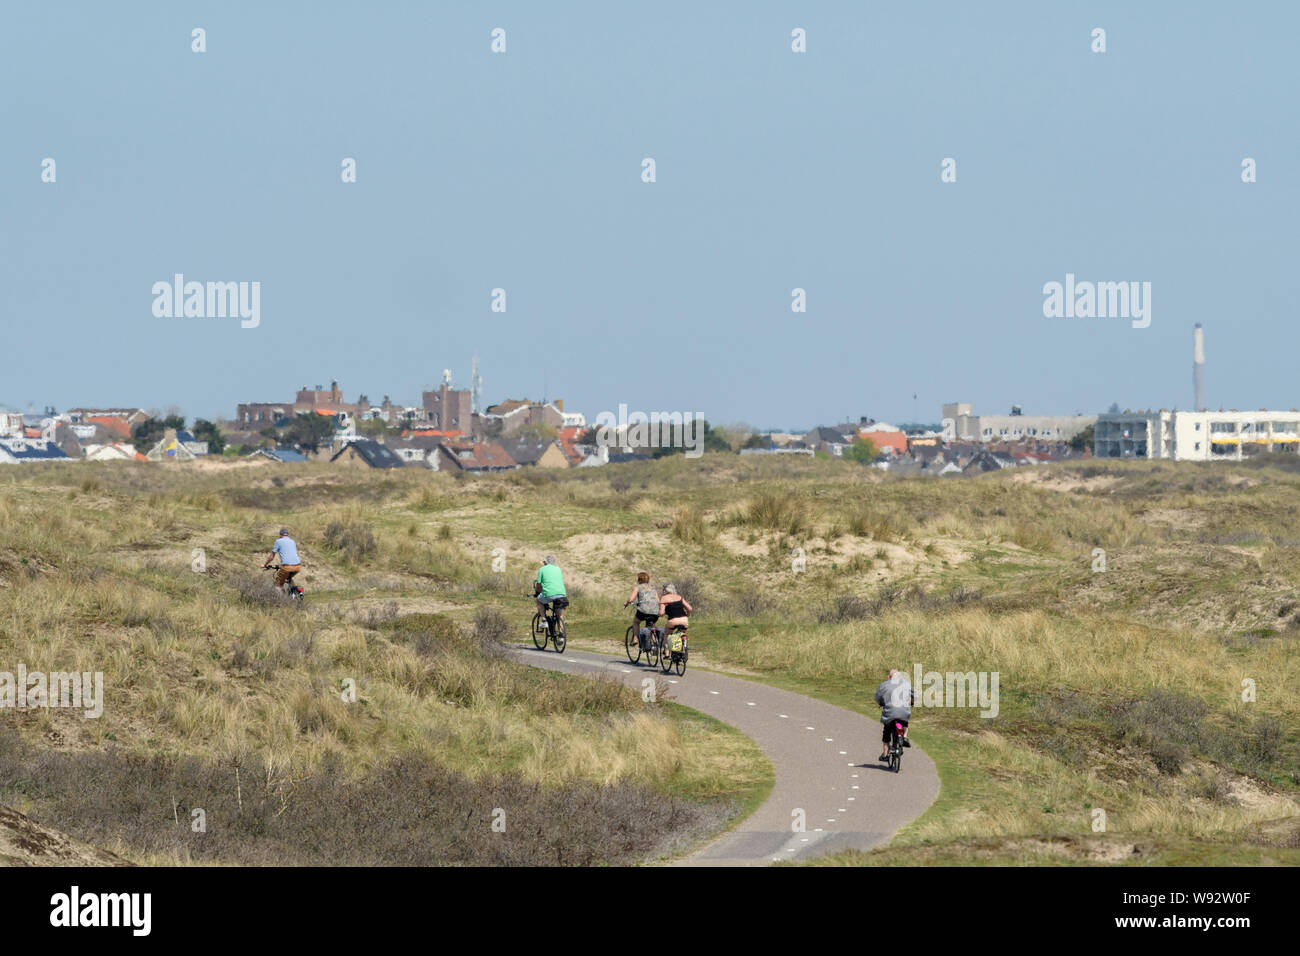 Aux Pays-Bas. Avril 2018. L'écosystème des dunes de sable sur la côte nord de l'Hollande. Les cyclistes sur piste cyclable du littoral. Banque D'Images